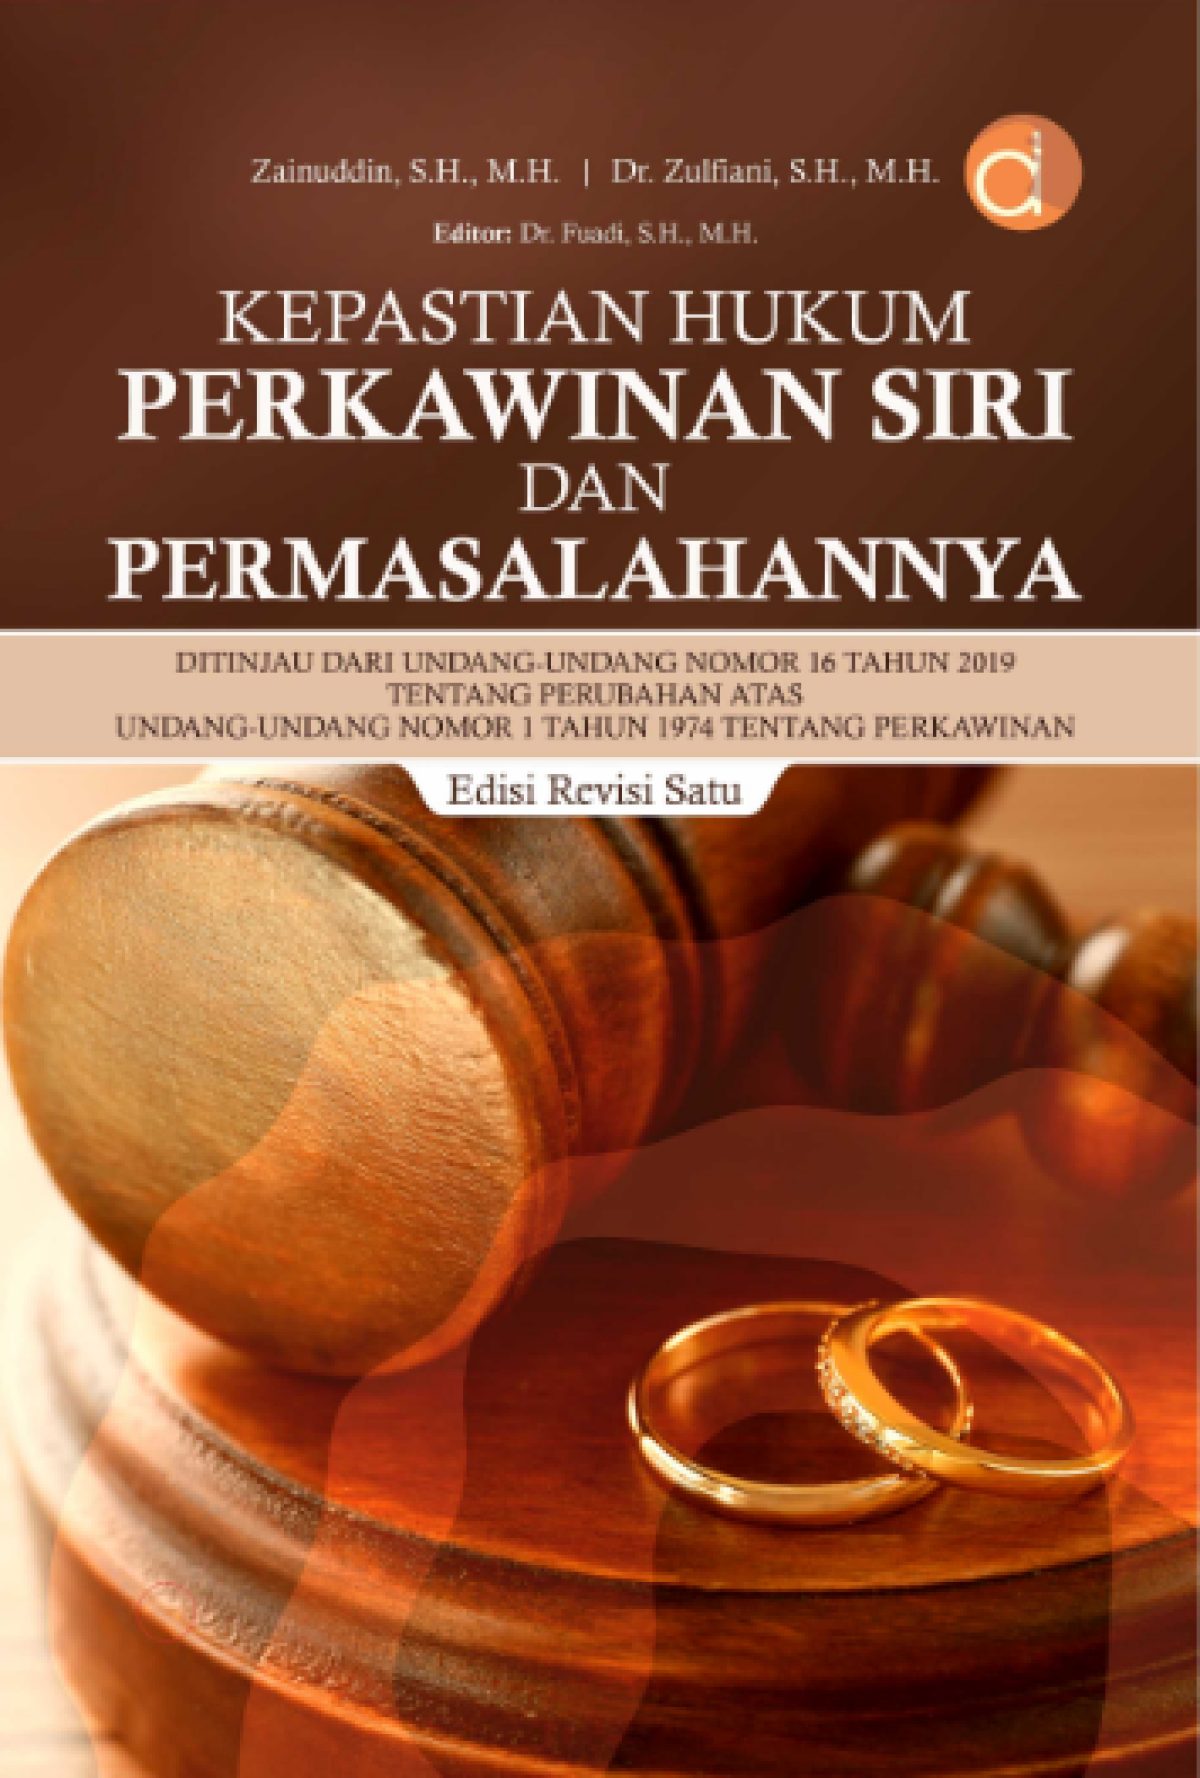 Buku Kepastian Hukum Perkawinan Siri Dan Permasalahannya Ph